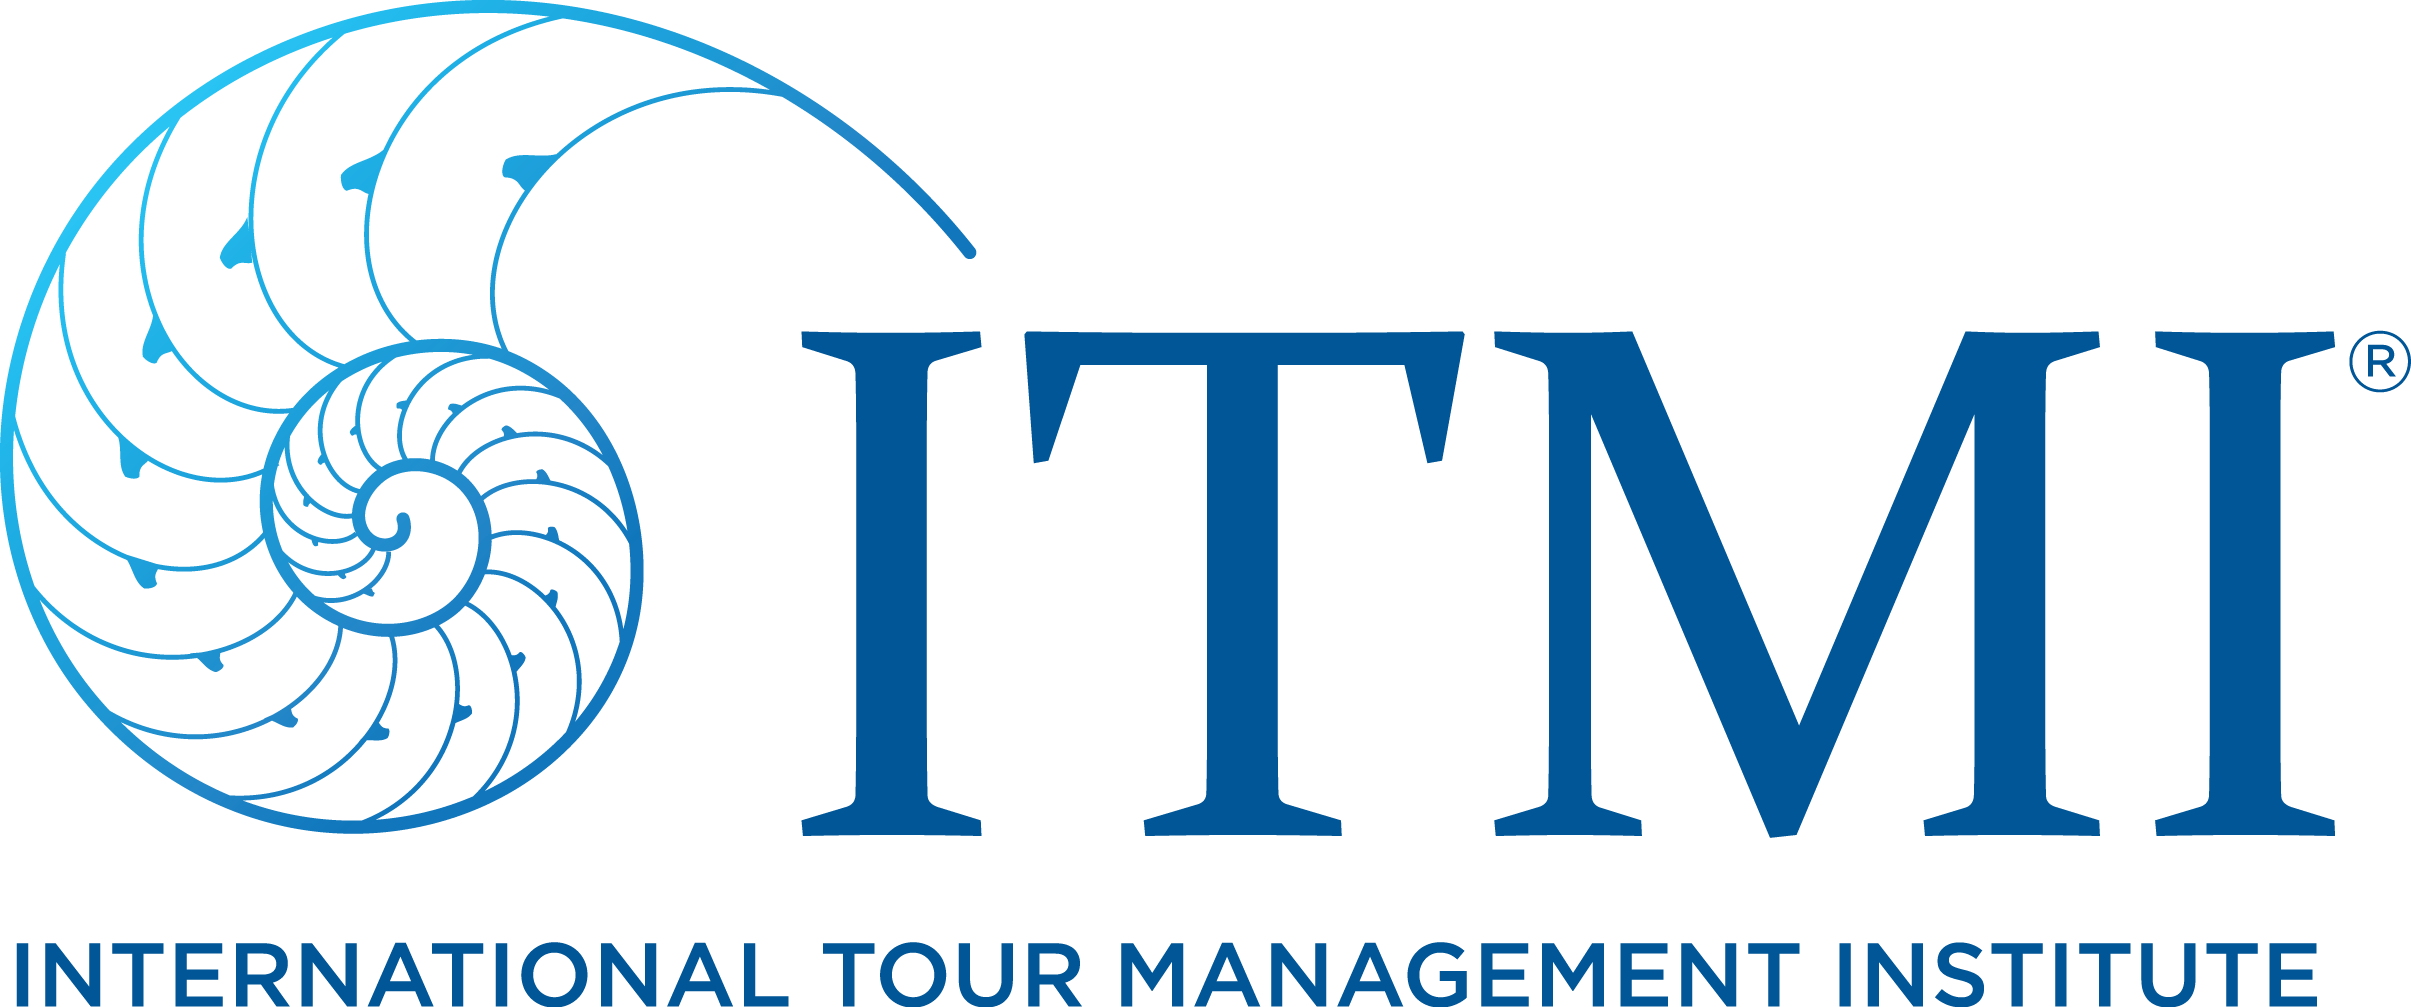 International Tour Management Institute (ITMI)